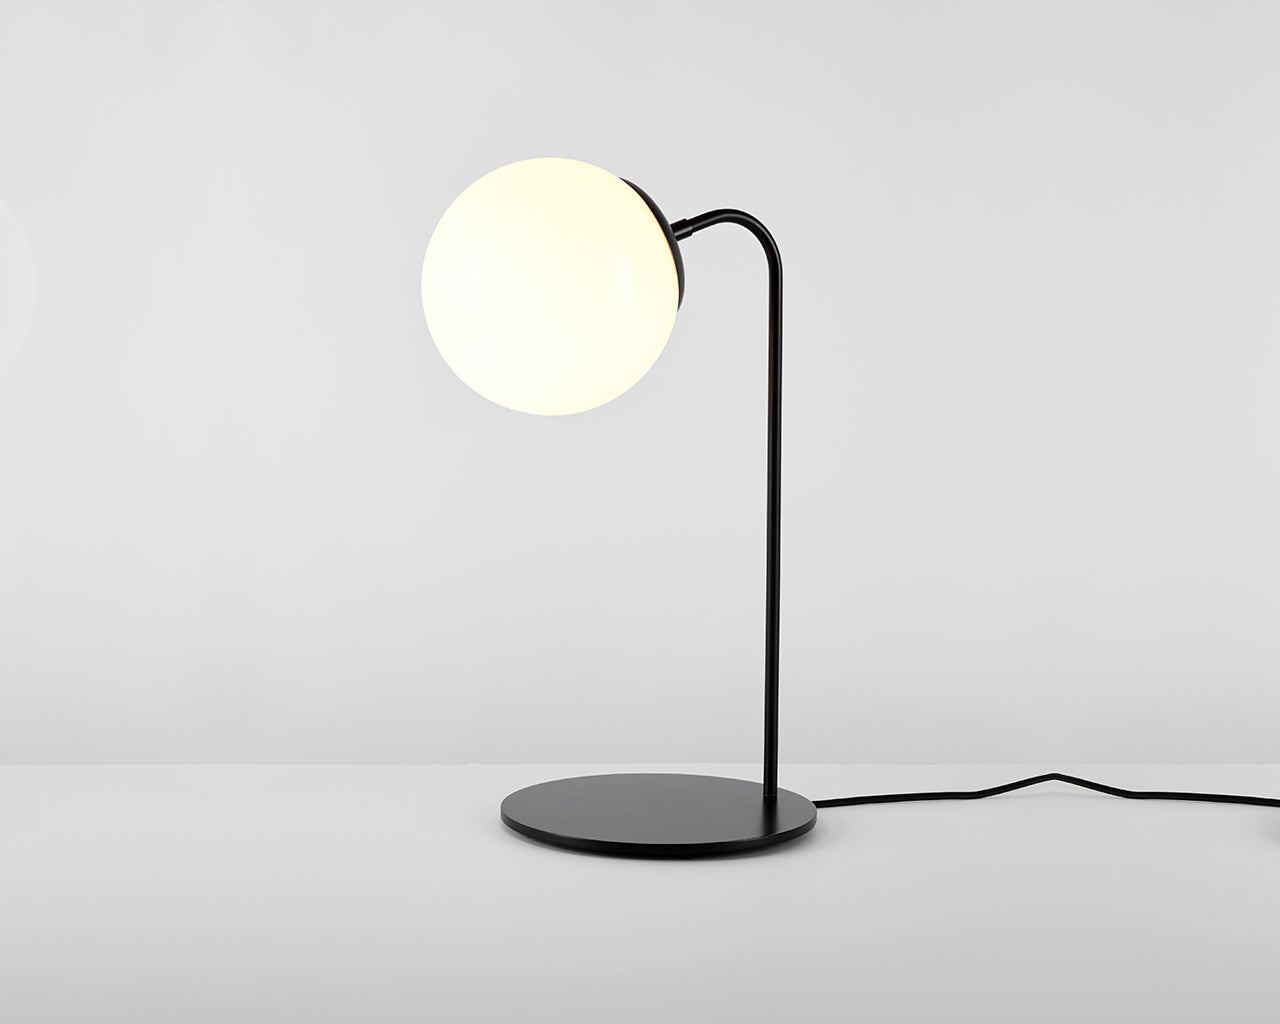 Modo - Desk Lamp